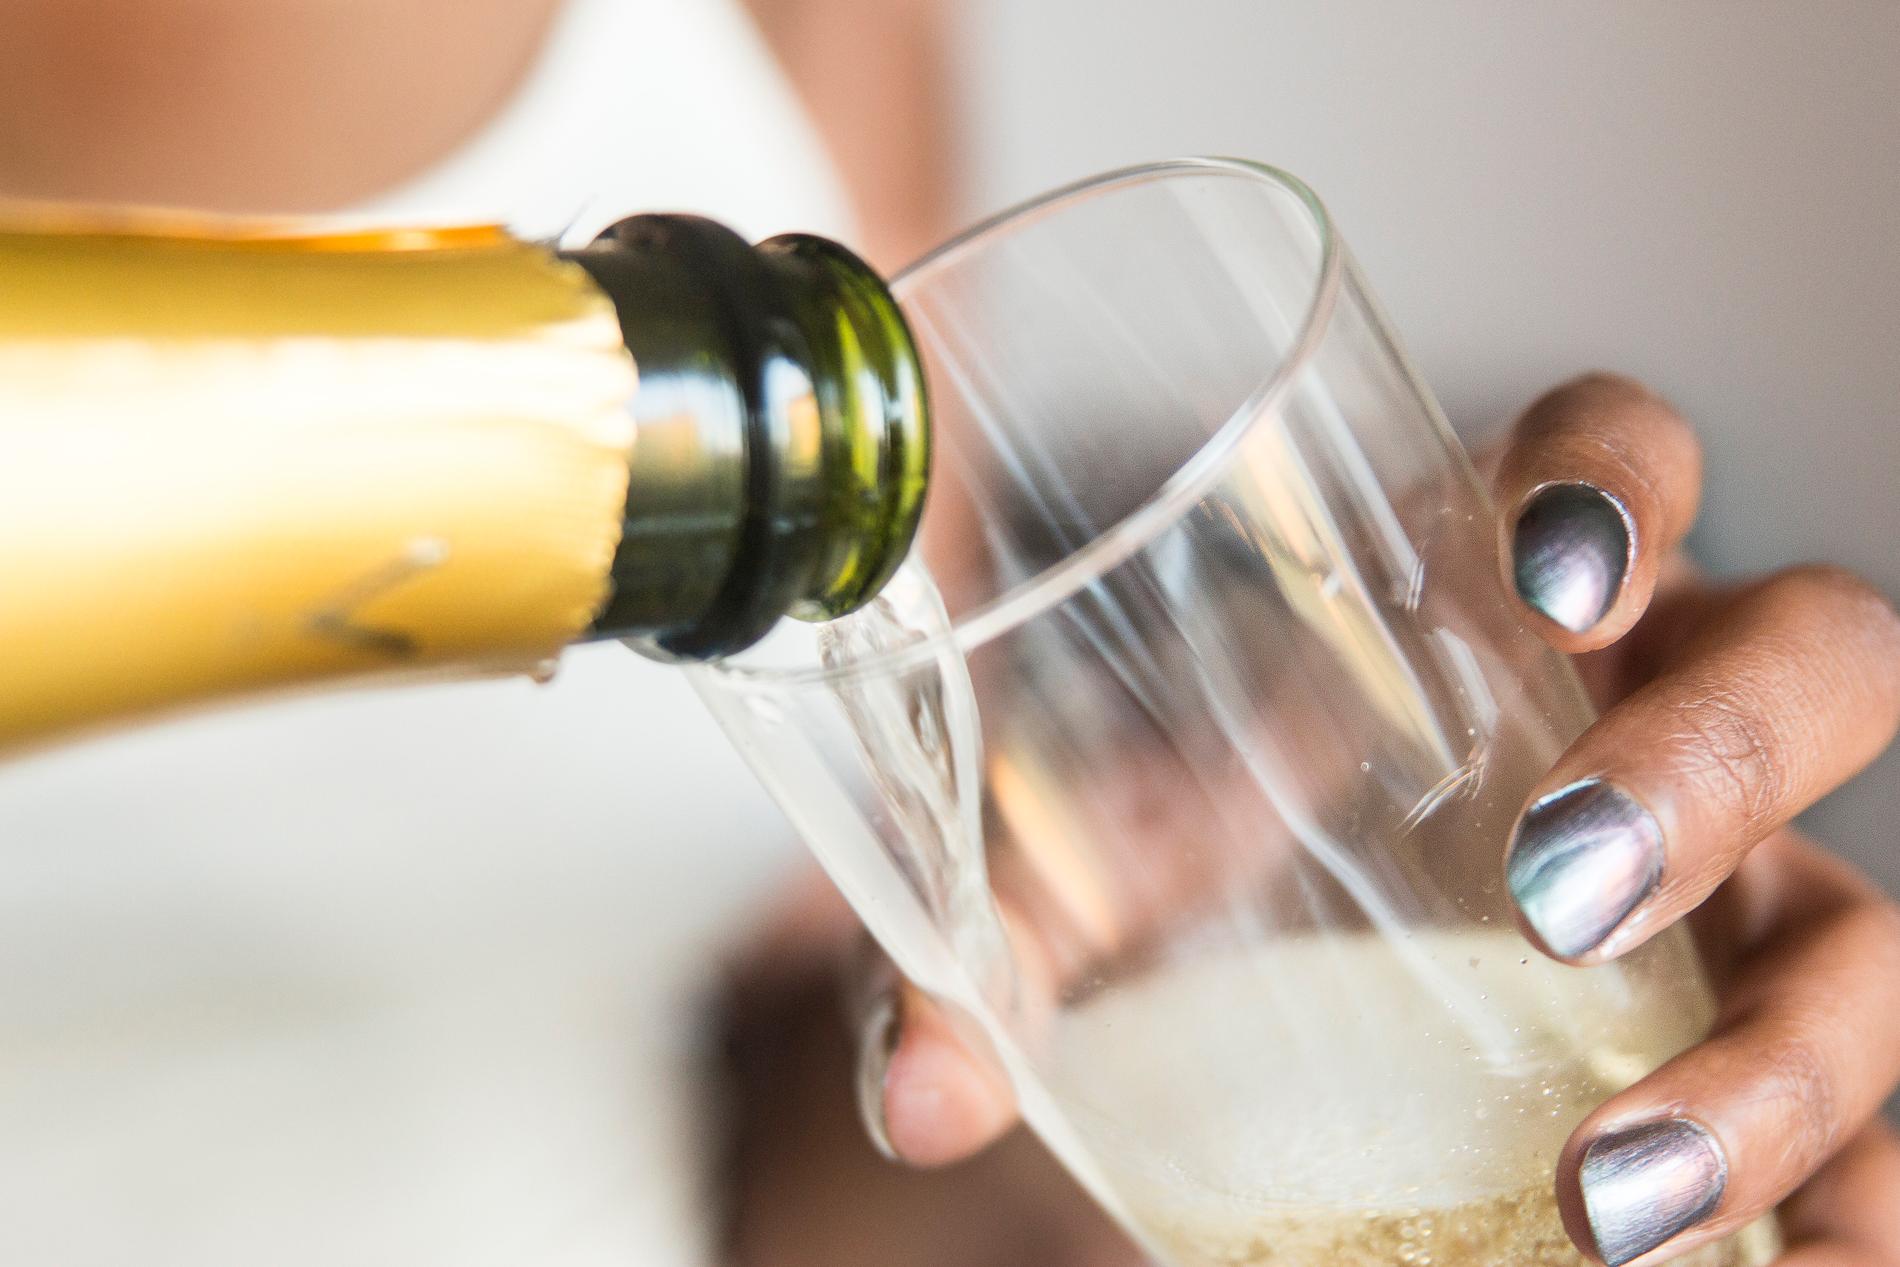 Bara dryck från den franska regionen Champagne får ha namnet på flaskan. Arkivbild.